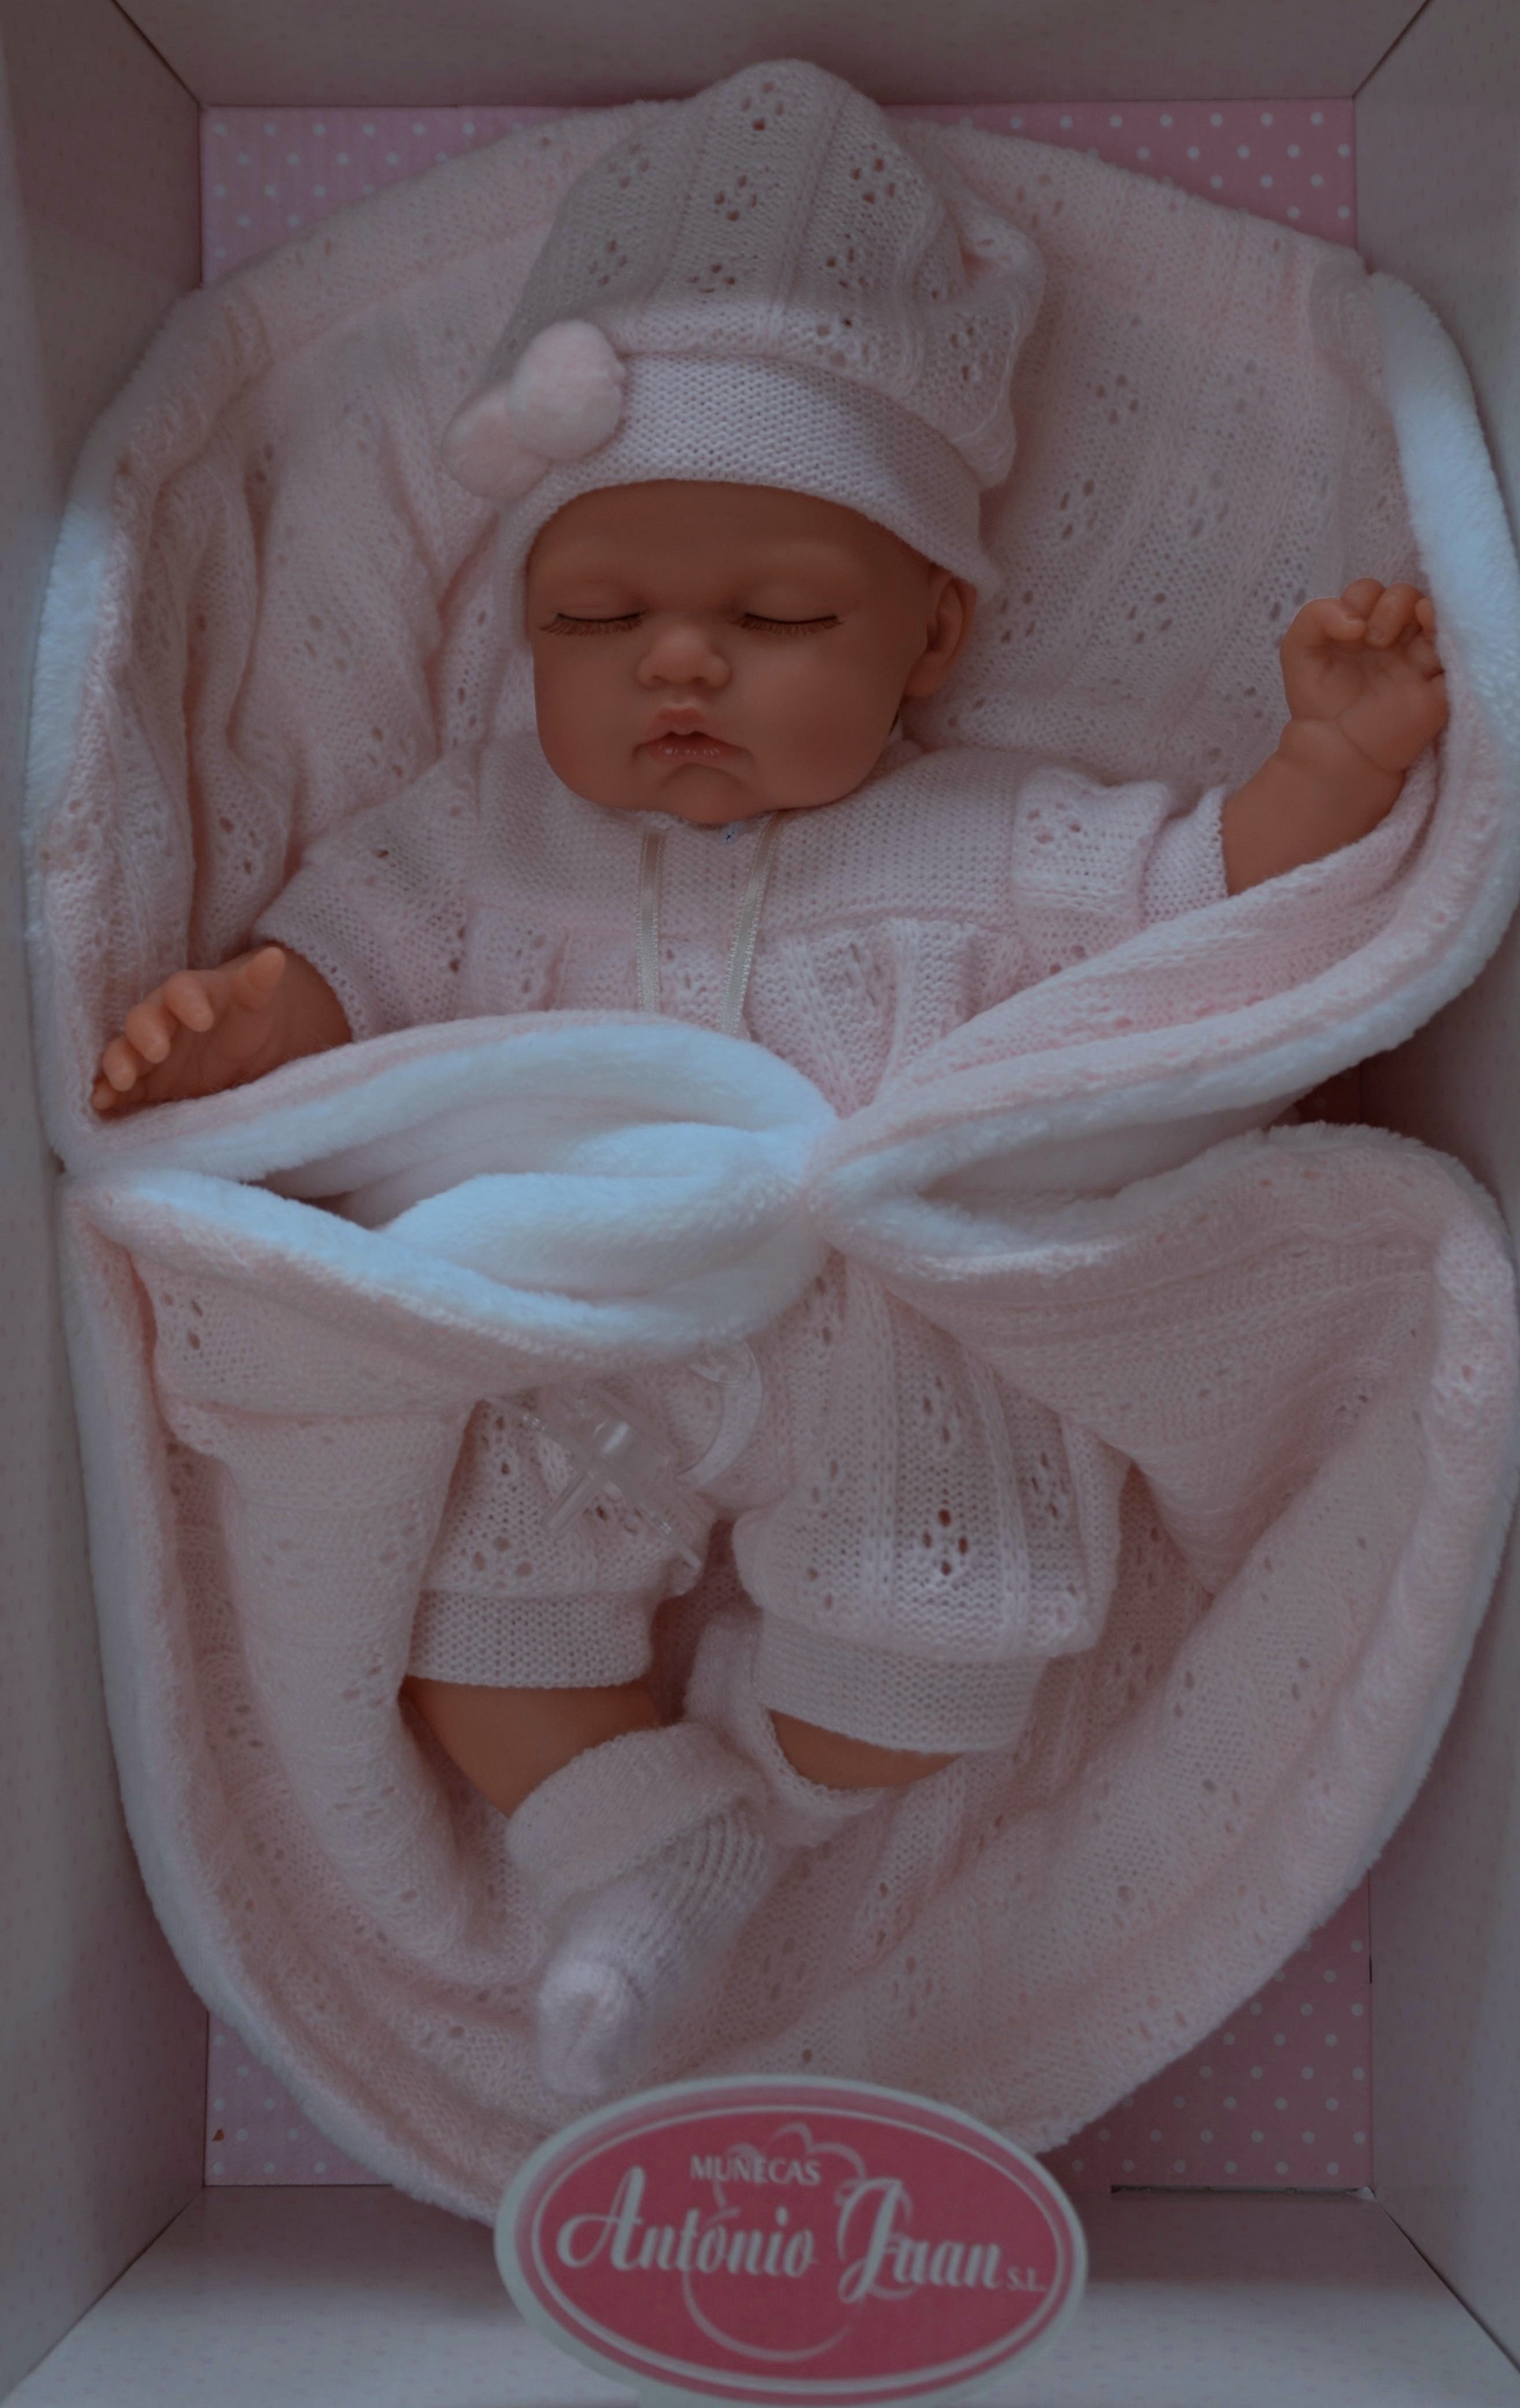 Spící realistické miminko -holčička Luni na dečce od Antonio Juan